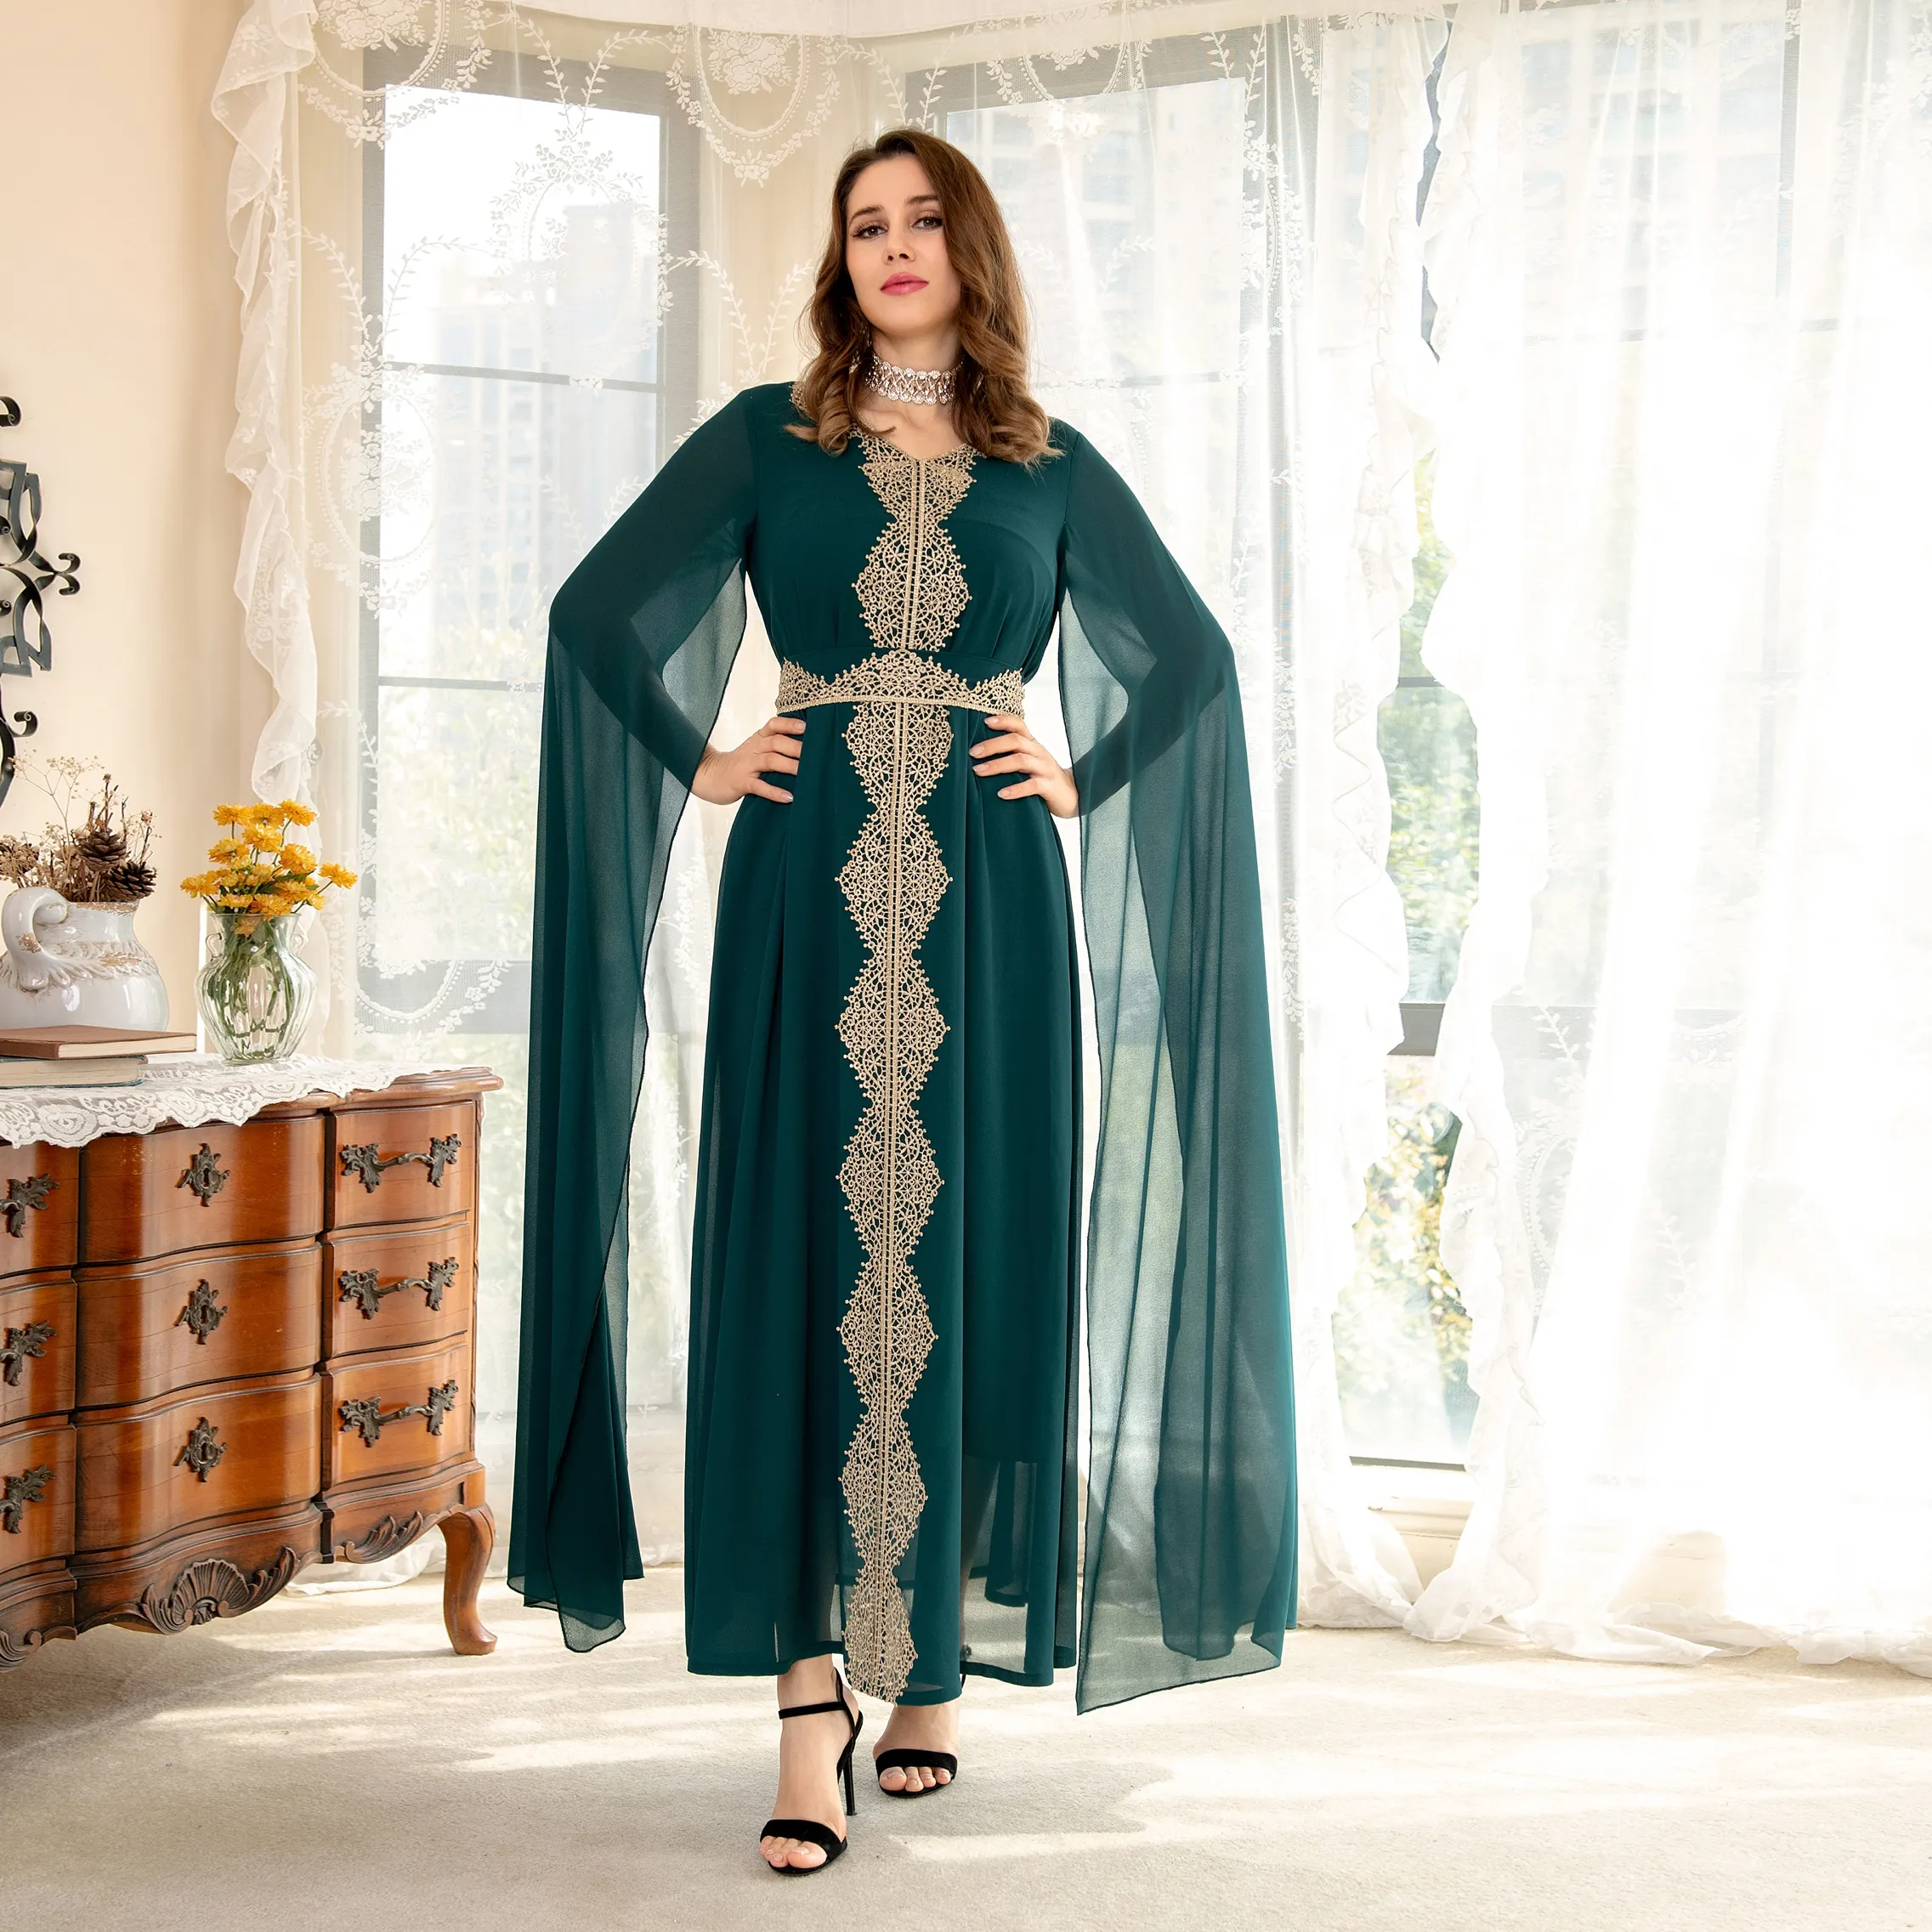 Gaun Arab Dubai Muslim Wanita Jubah Warna Solid Gaun Muslim Wanita Sifon dengan Jubah Payet Lengan Kelelawar